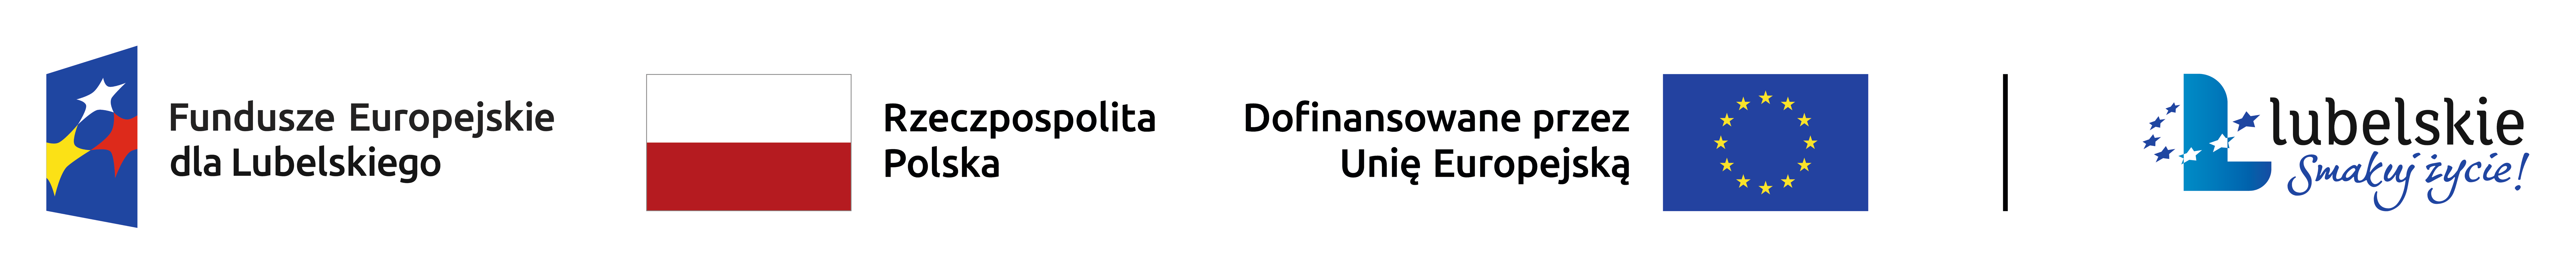 Logotypy: Fundusze Europejskie dla Lubelskiego, flaga Polski, napis "Rzeczpospolita Polska", symbol Unii Europejskiej, logo Województwa Lubelskiego z napisem "Lubelskie pełne możliwości".